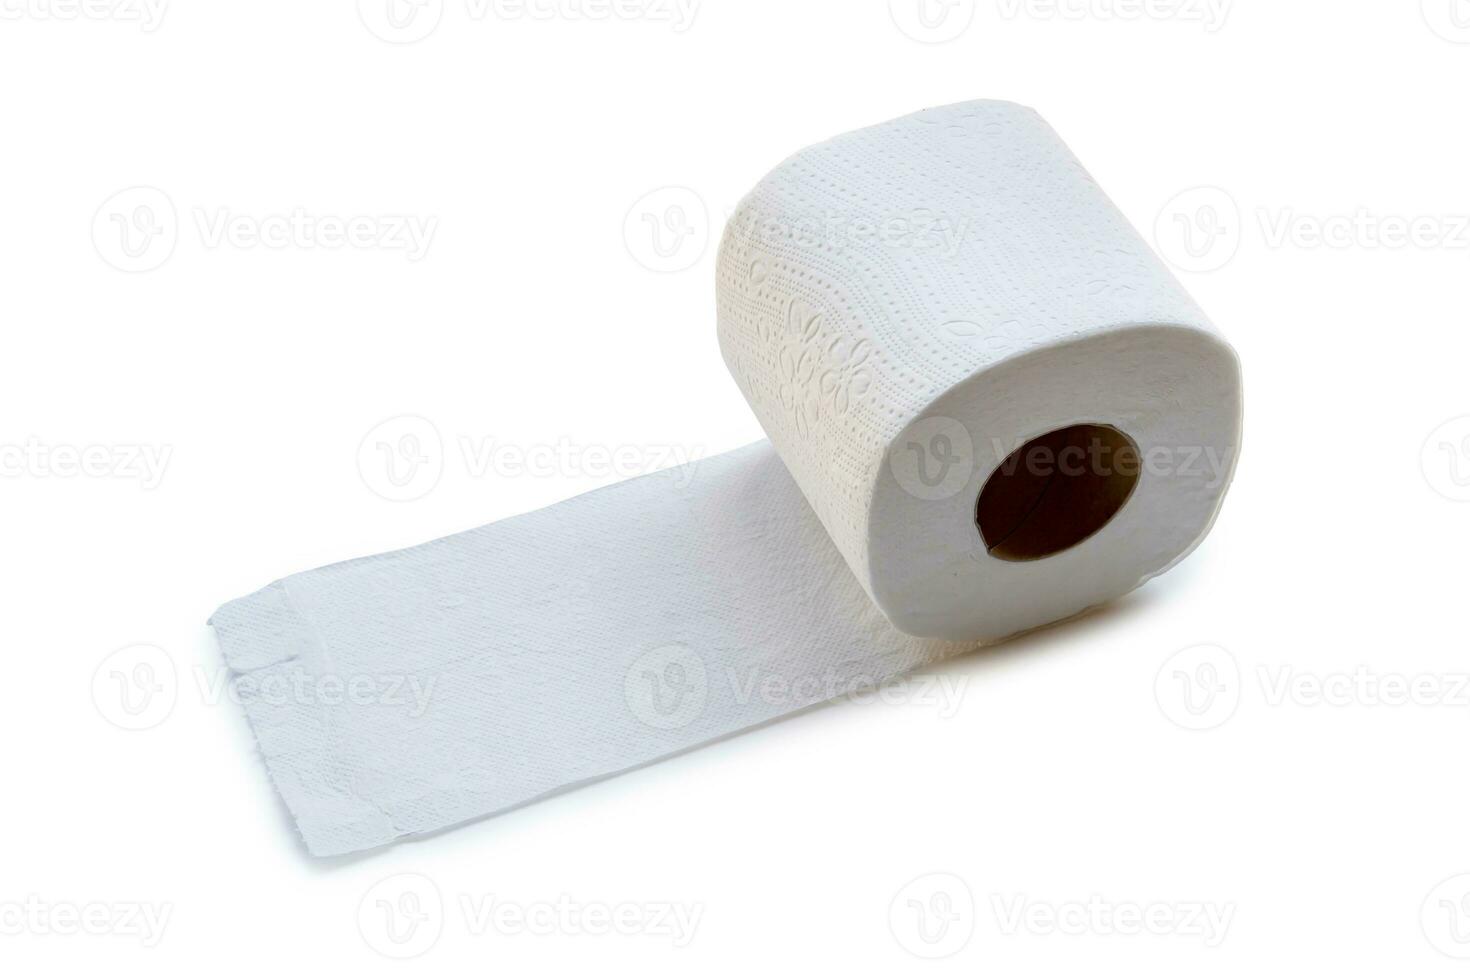 enda rulla av vit vävnad papper eller servett beredd för använda sig av i toalett eller toalett isolerat på vit bakgrund med klippning väg foto